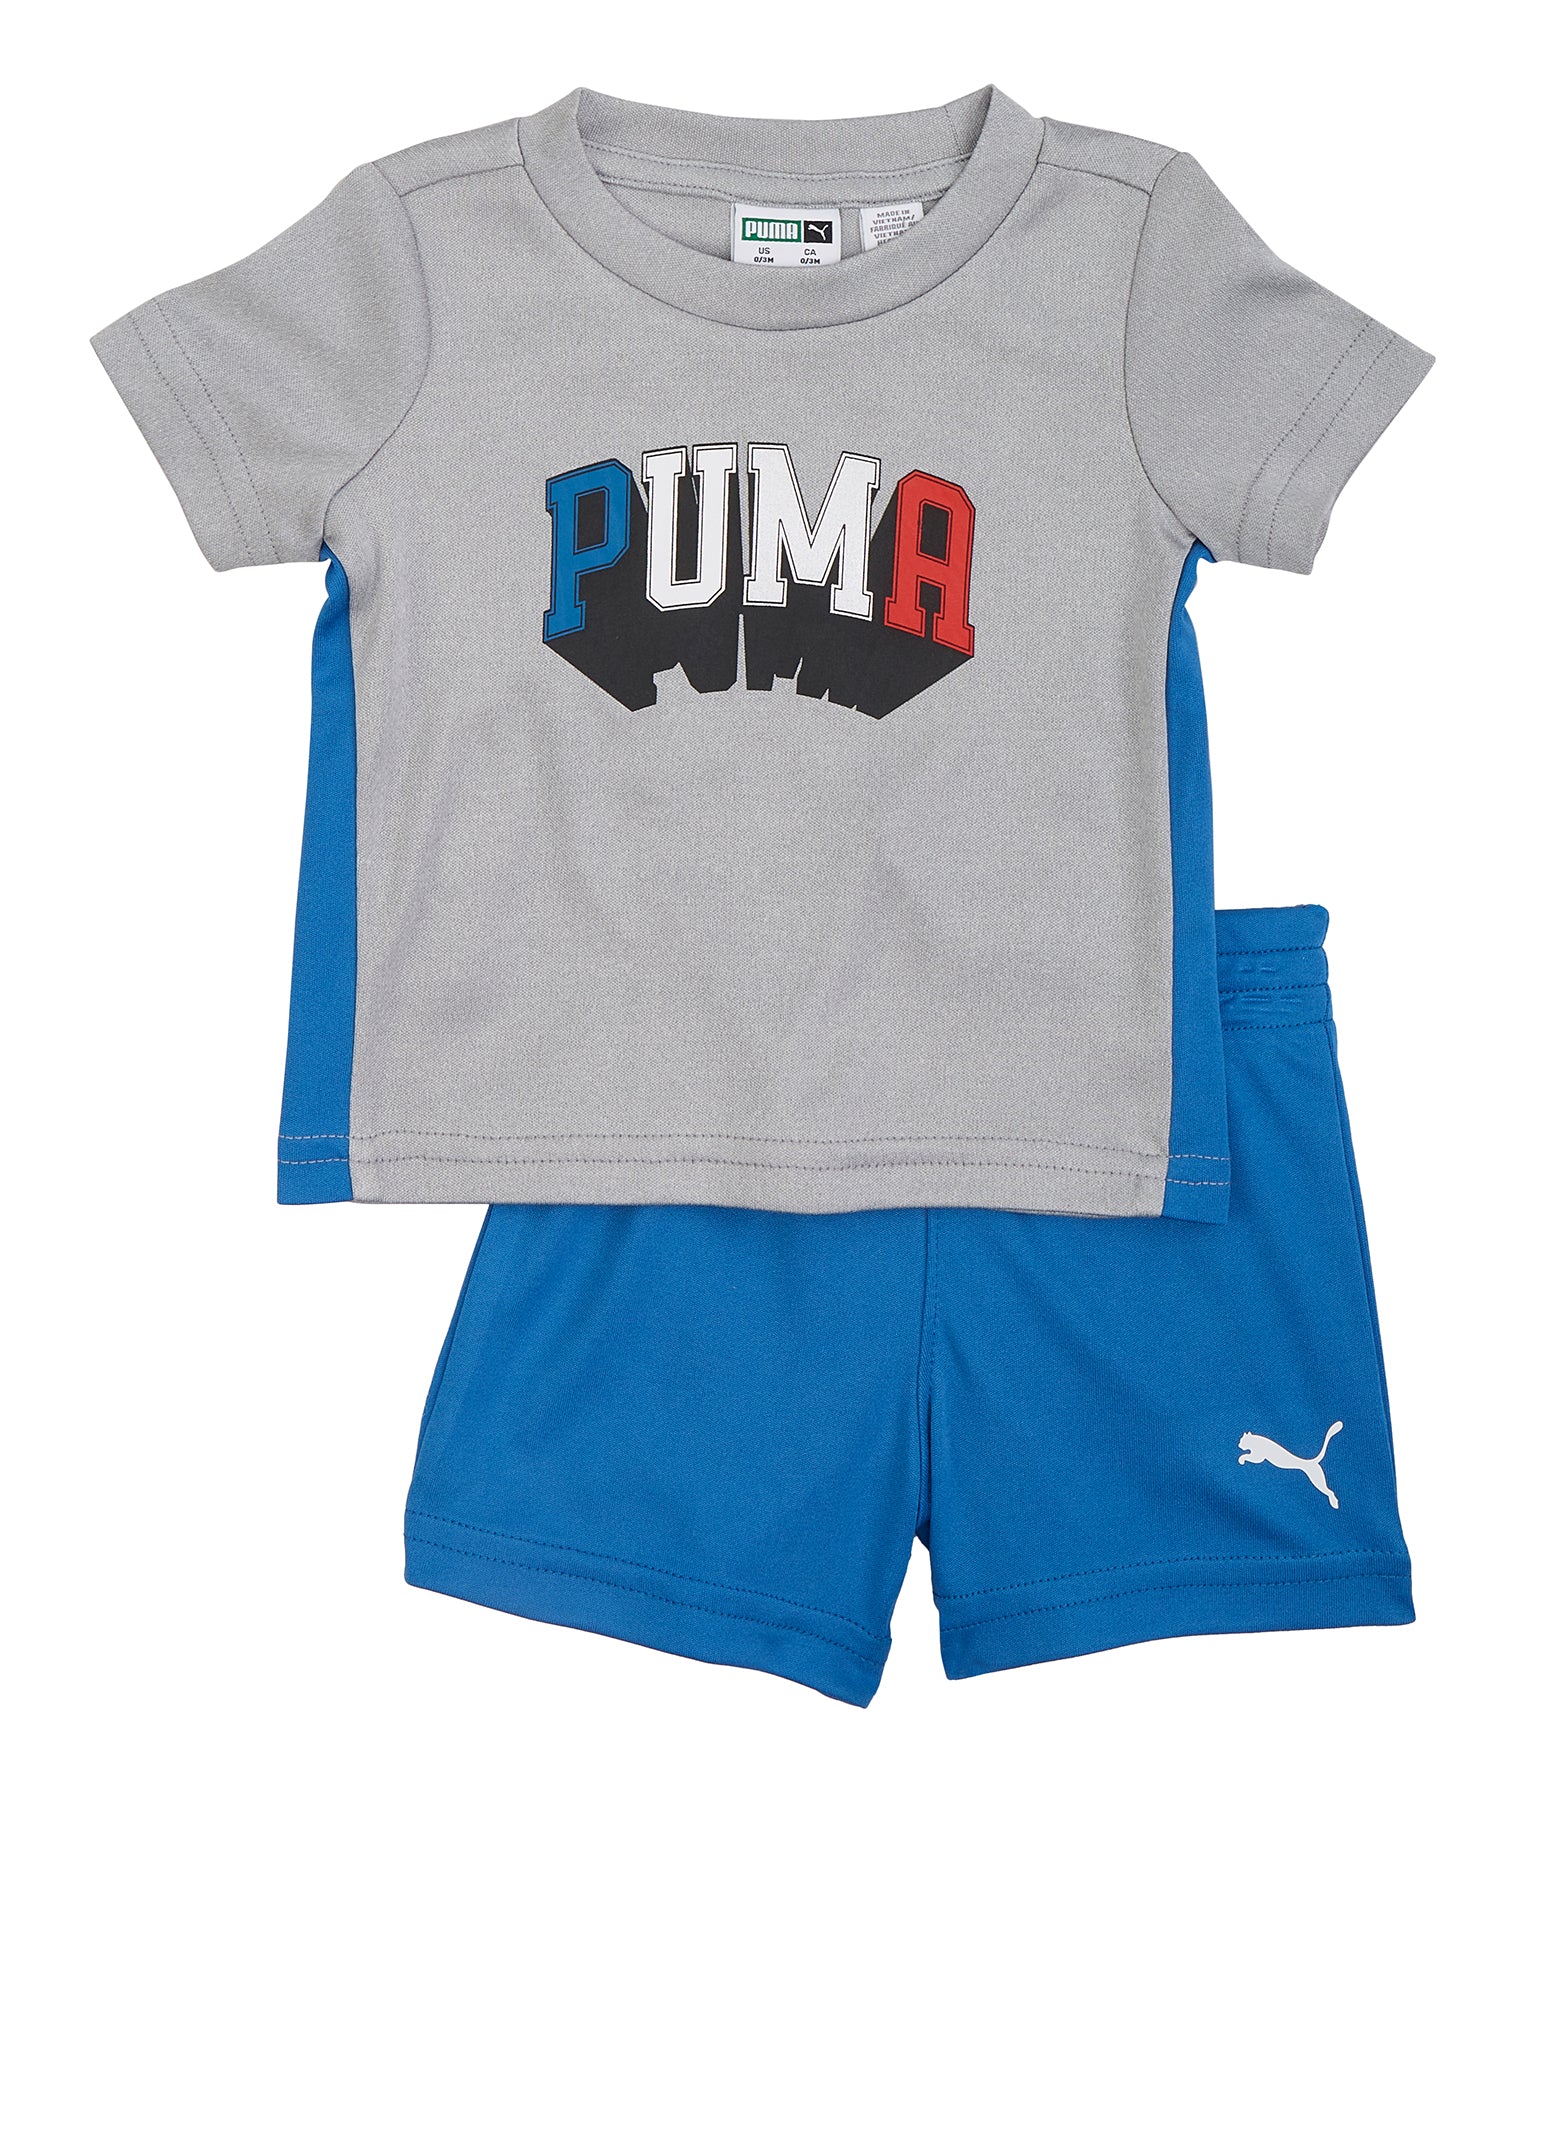 Baby Boys Puma Block Logo Tee and Shorts - Gray